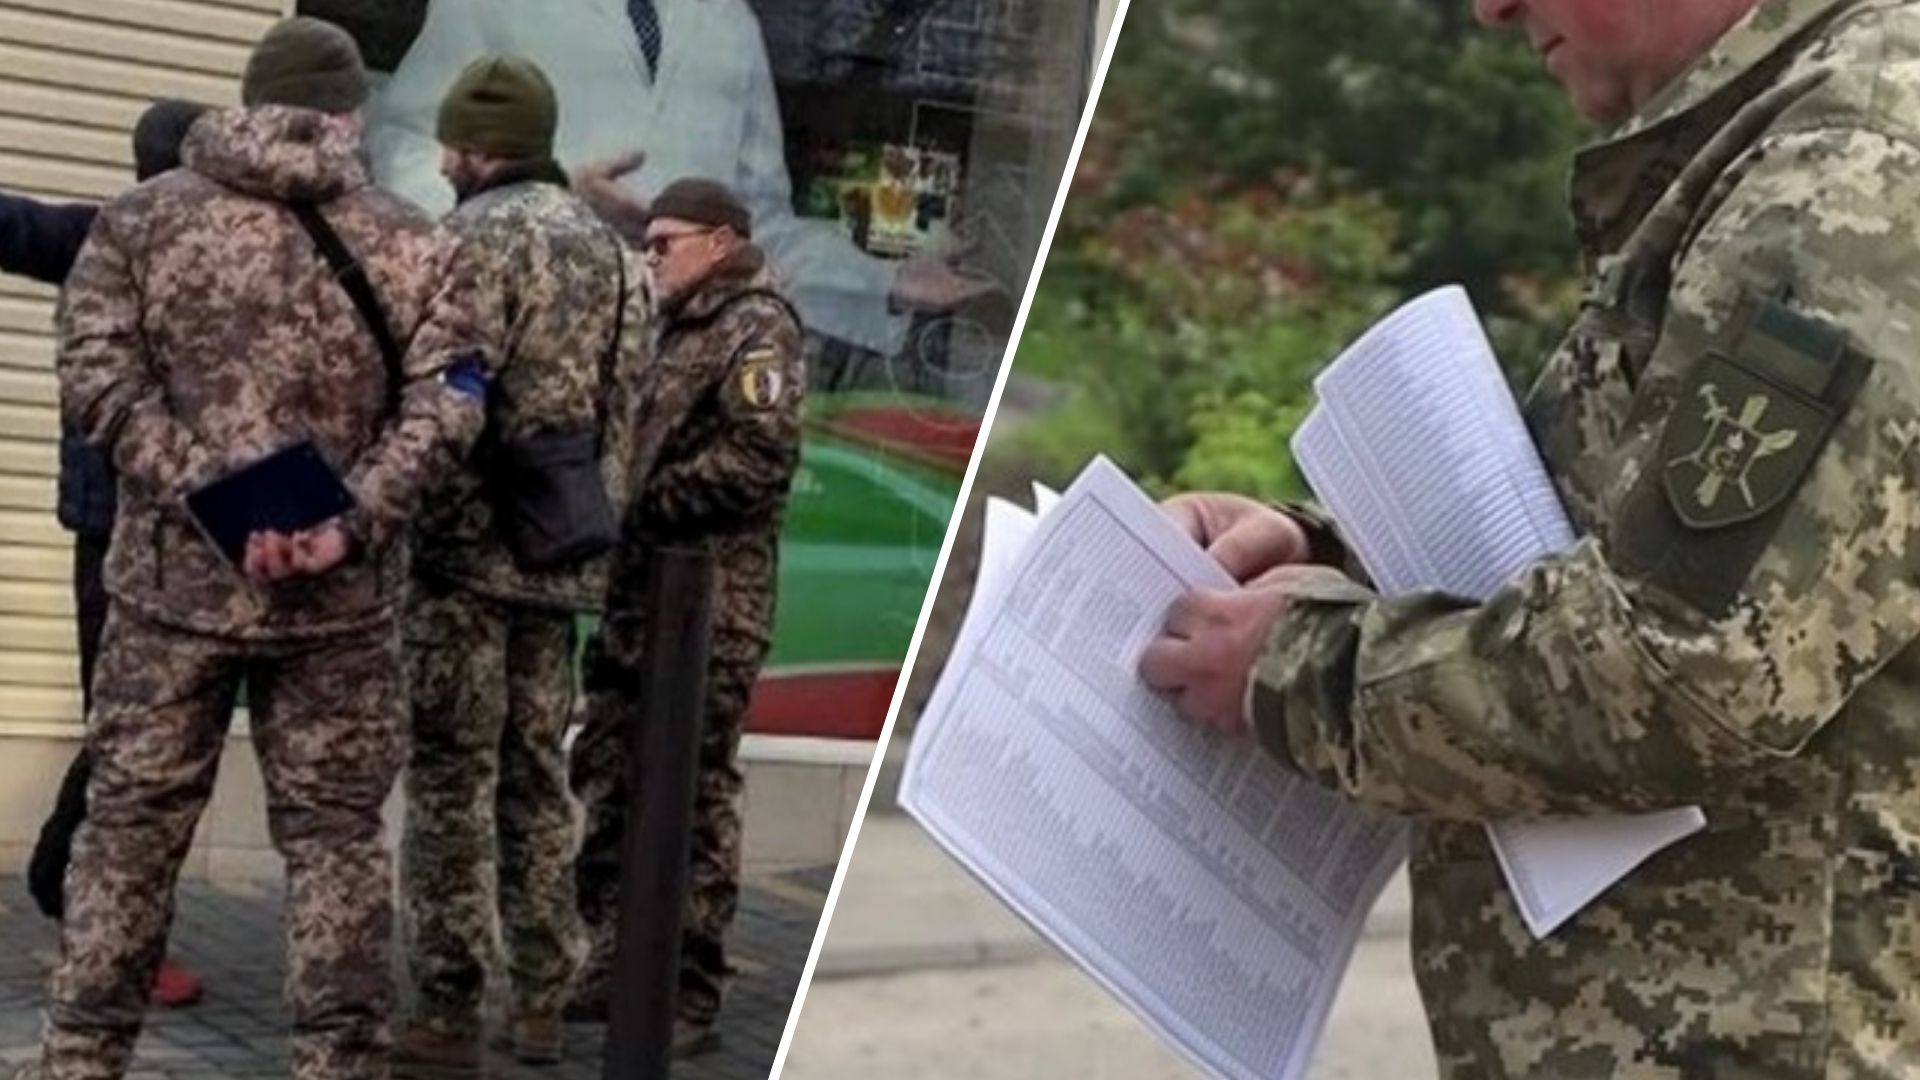 Адвокат Владимир Крекотен объяснил, должны ли призывники предъявлять документы сотрудникам ТКК во время военного положения и мобилизации.